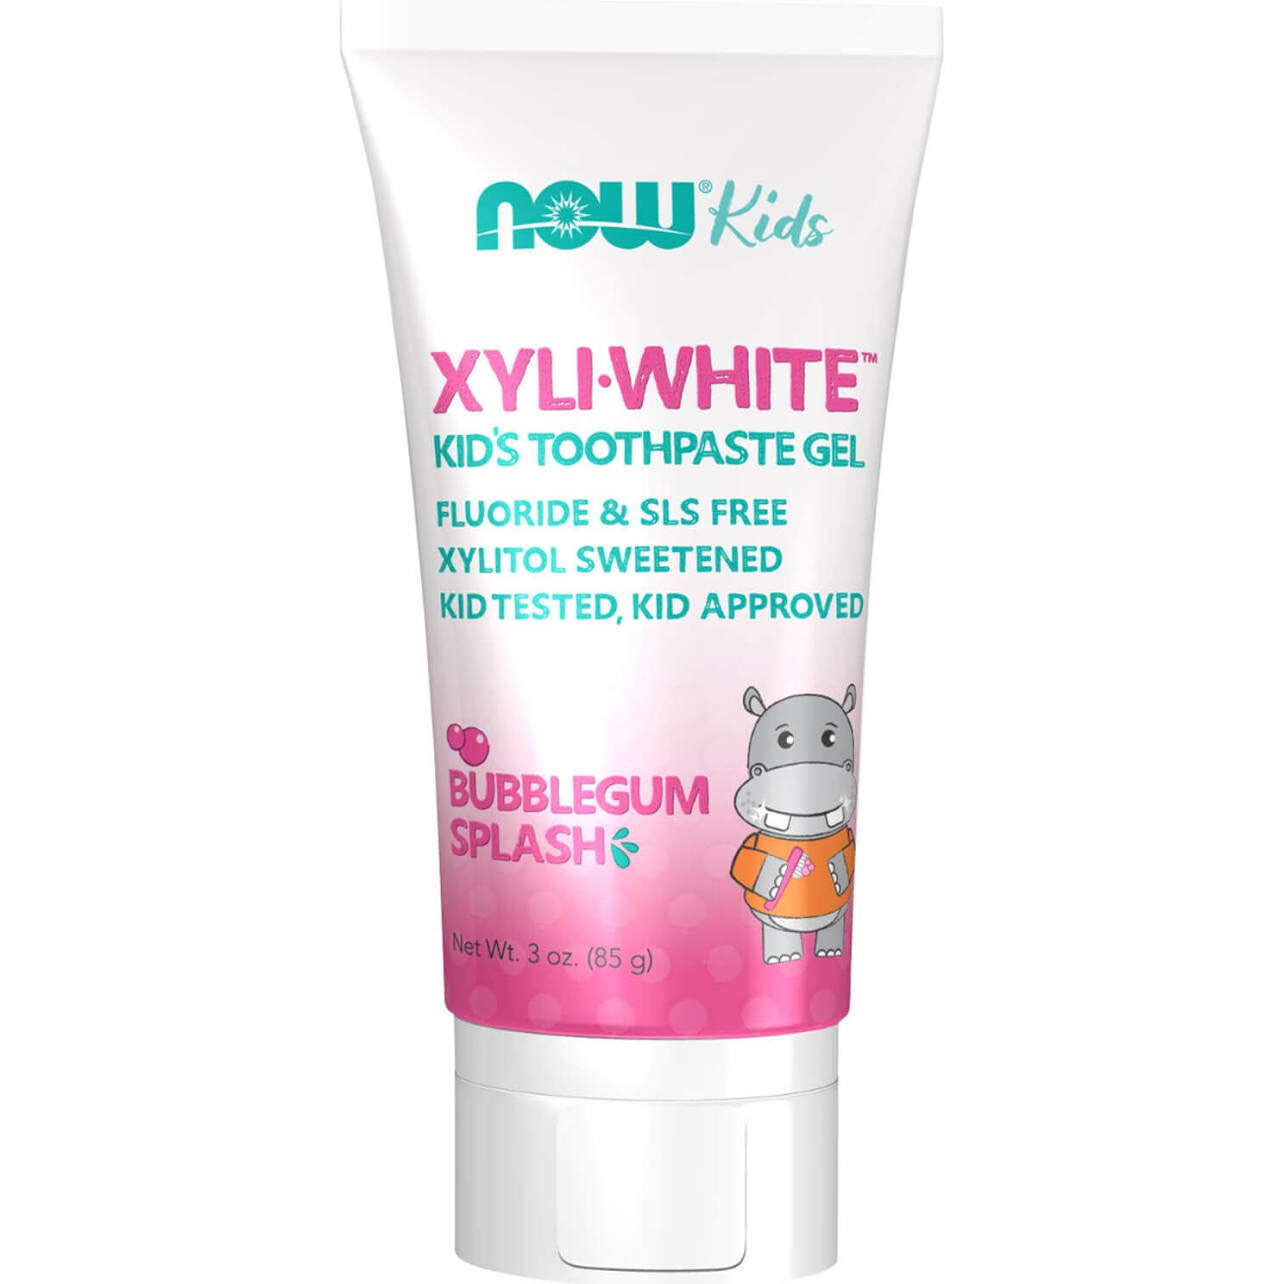 Xyliwhite™ Bubblegum Splash Toothpaste Gel for Children - 3 oz.
SKU 397